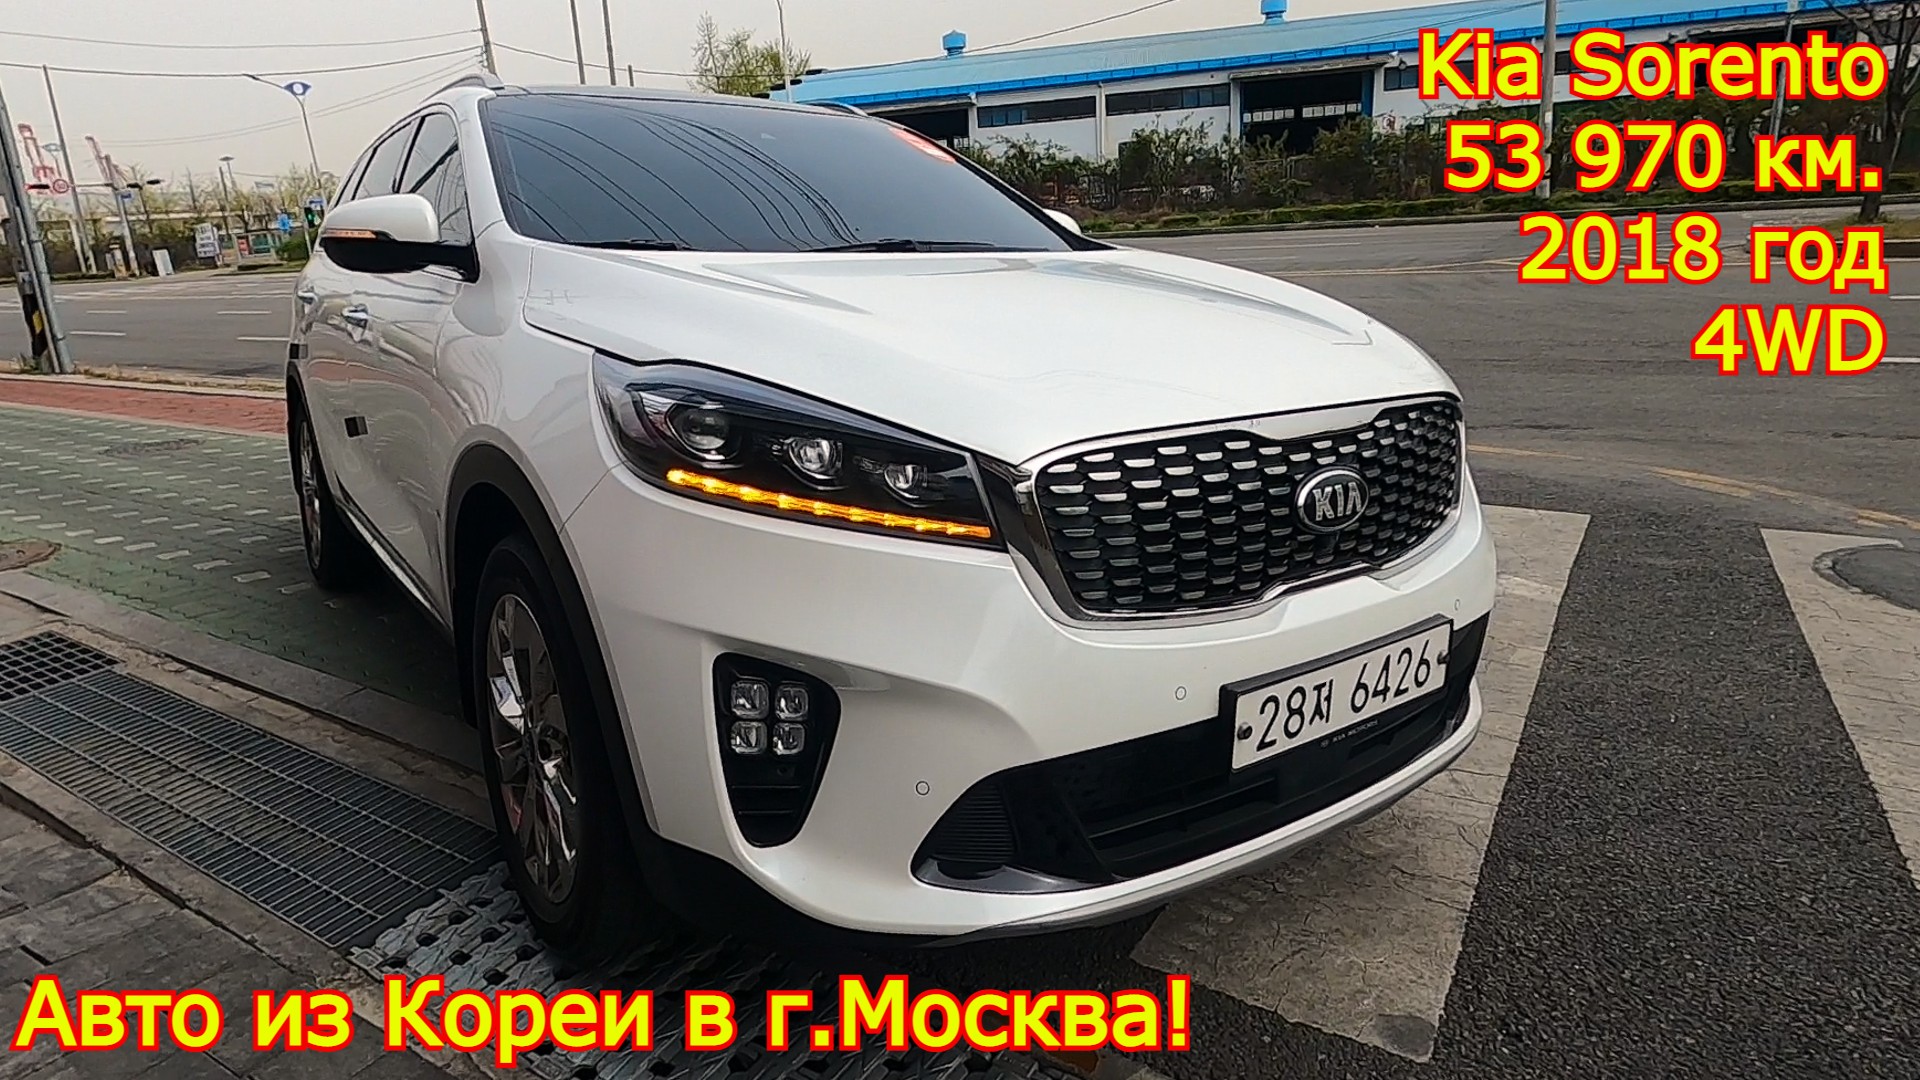 Авто из Кореи в г.Москва - Kia Sorento Prime, 2018/19 год, 53 970 км., 4WD!